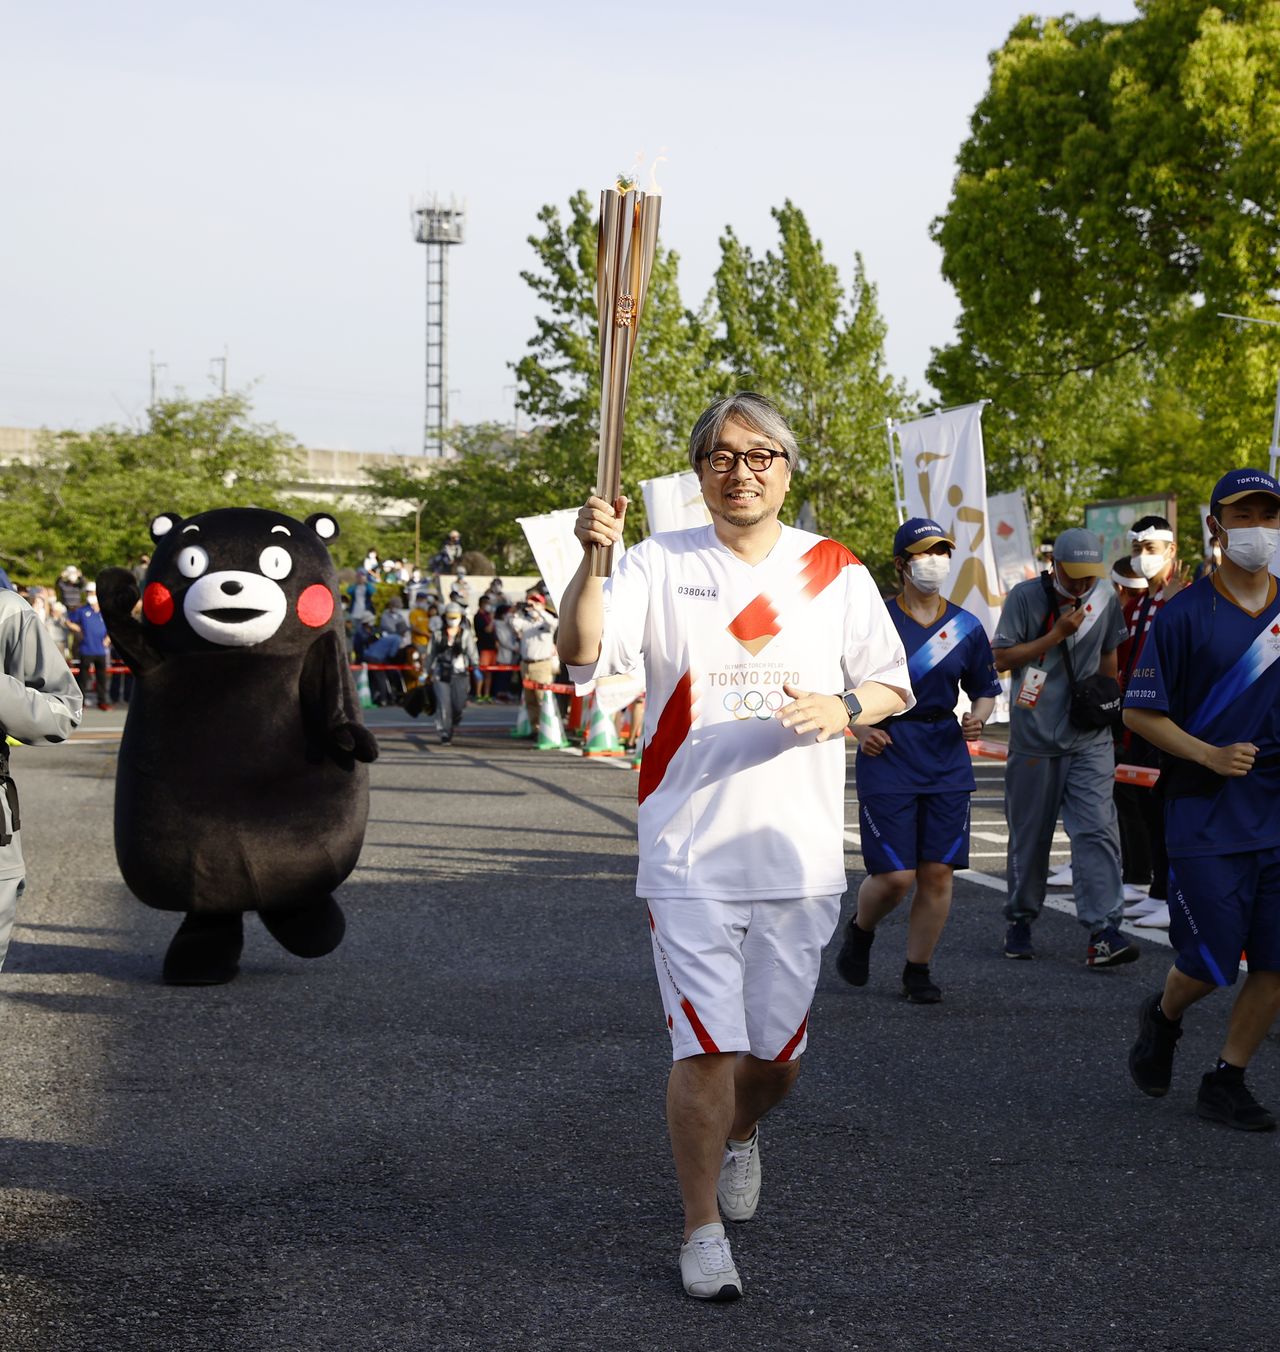 كوياما كوندو القائد الإبداعي للمشروع خلال إحدى مراحل تتابع شعلة طوكيو 2020 يحمل الشعلة الأولمبية عبر أوتو في محافظة كوماموتو في 5 مايو/ أيار عام 2021، ويتبعه كومامون جيجي برس.